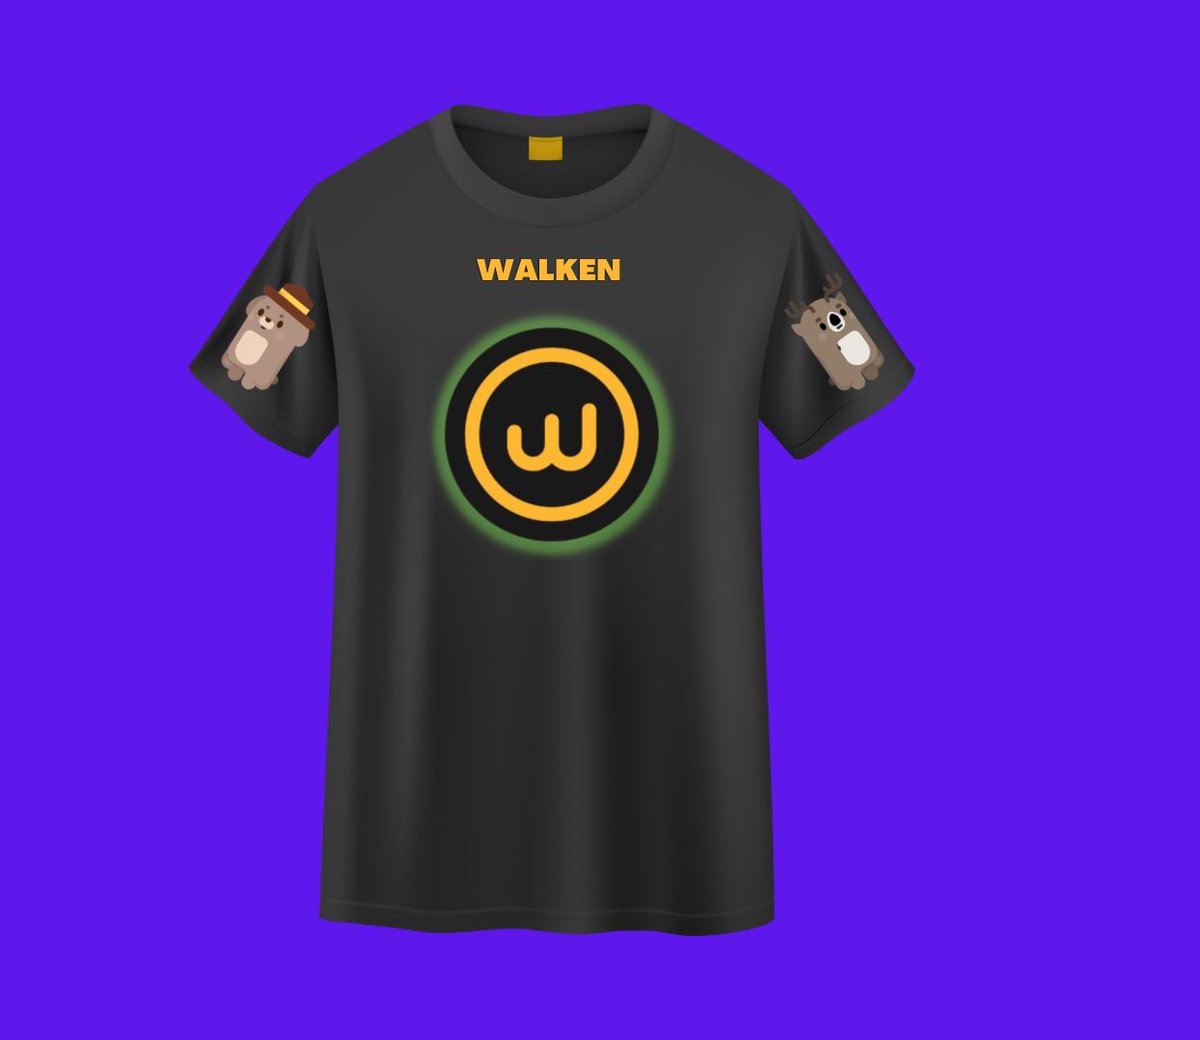 Walken için tasarladığım tişört tasarımım.

@walken_io 
Walken inceleme videom
👉youtu.be/m3nhcGNO2-g
                      👆
#wlkn #walken #bitcoin   #bitcoin   #Crypto #btc   #altcoin #kriptopara #PlayToEarn #WalkenVibe